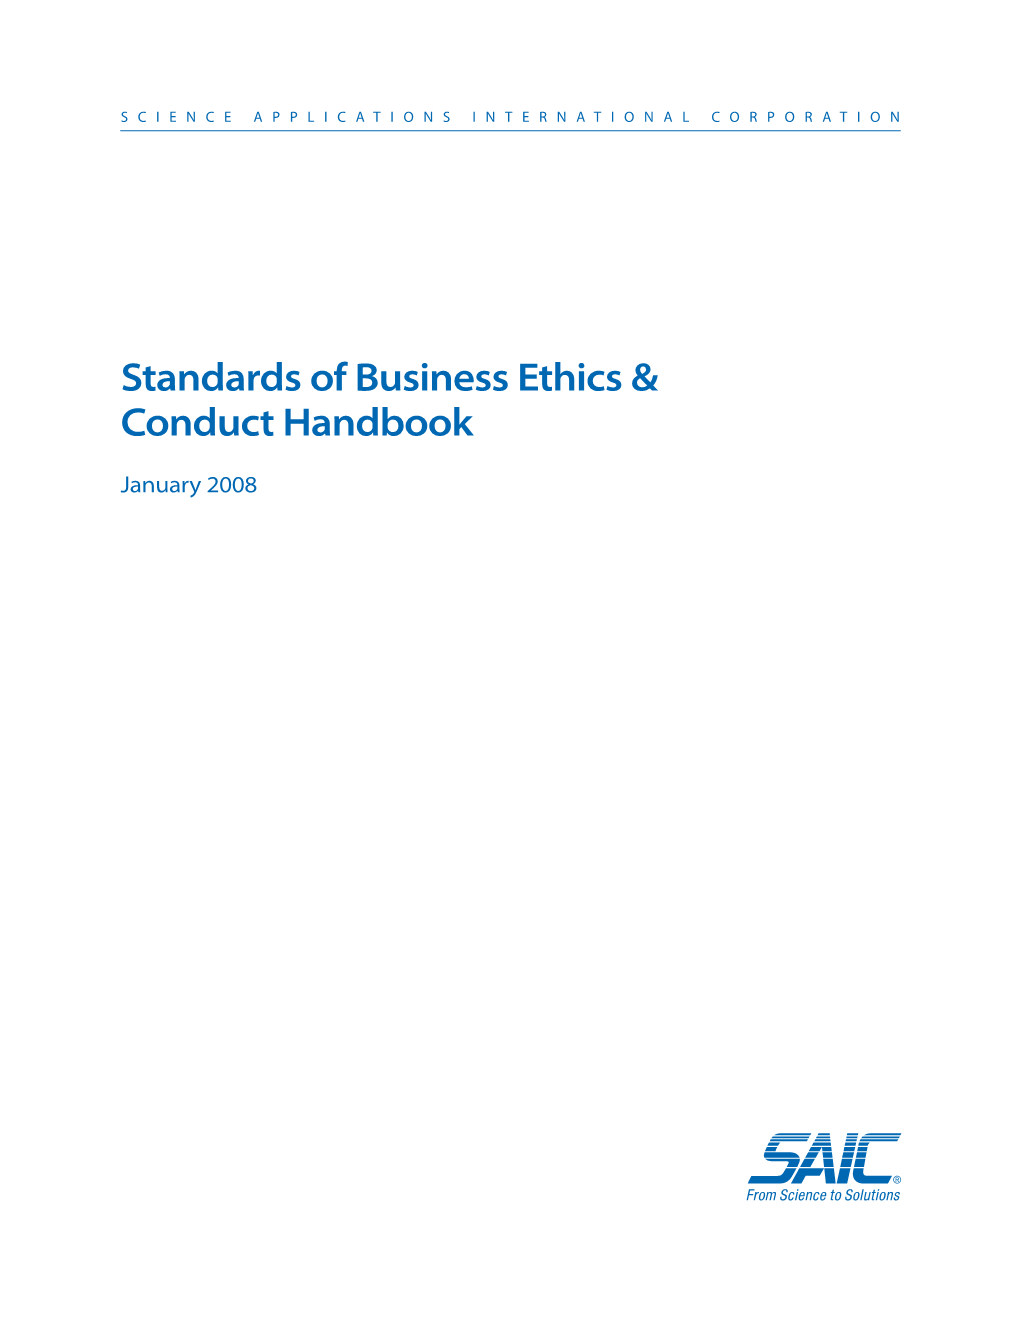 Employee Ethics Committee: Download